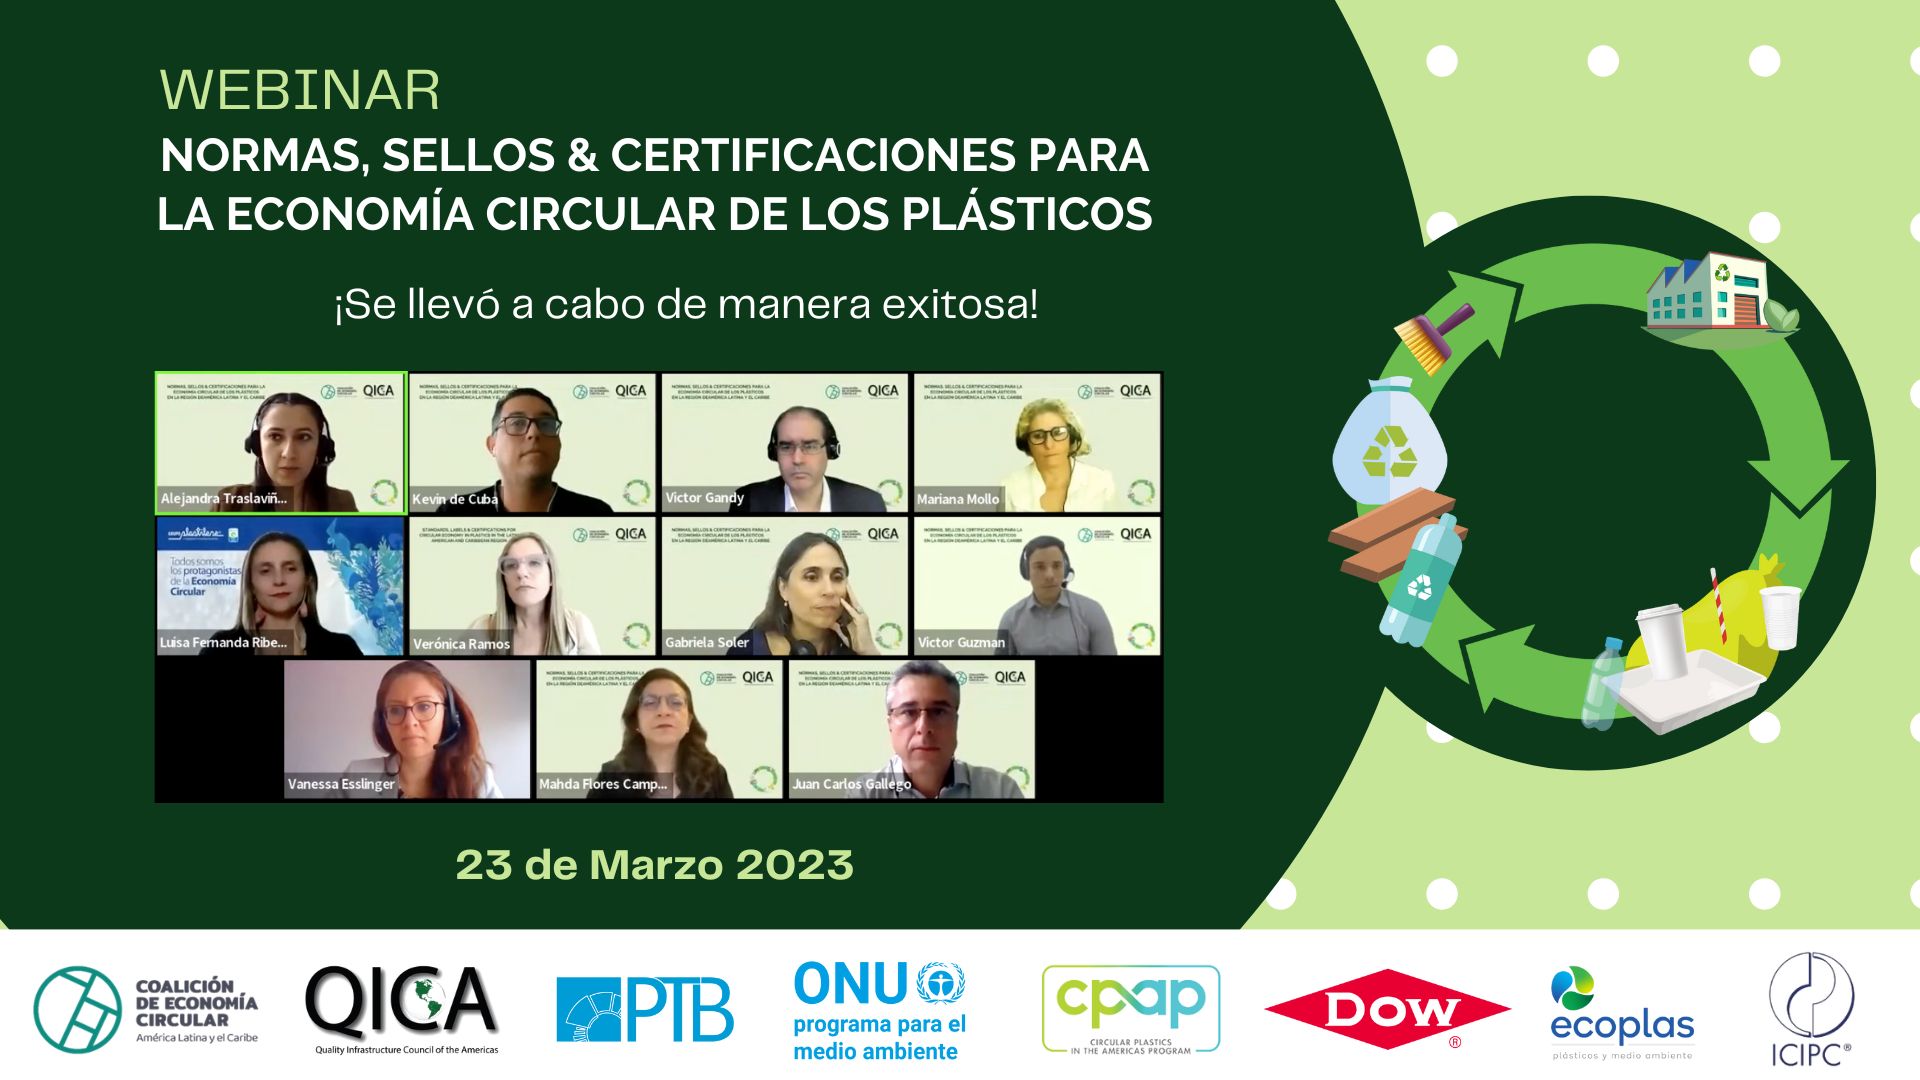 Webinar sobre Normas, Sellos & Certificaciones para la Economía Circular de los plásticos